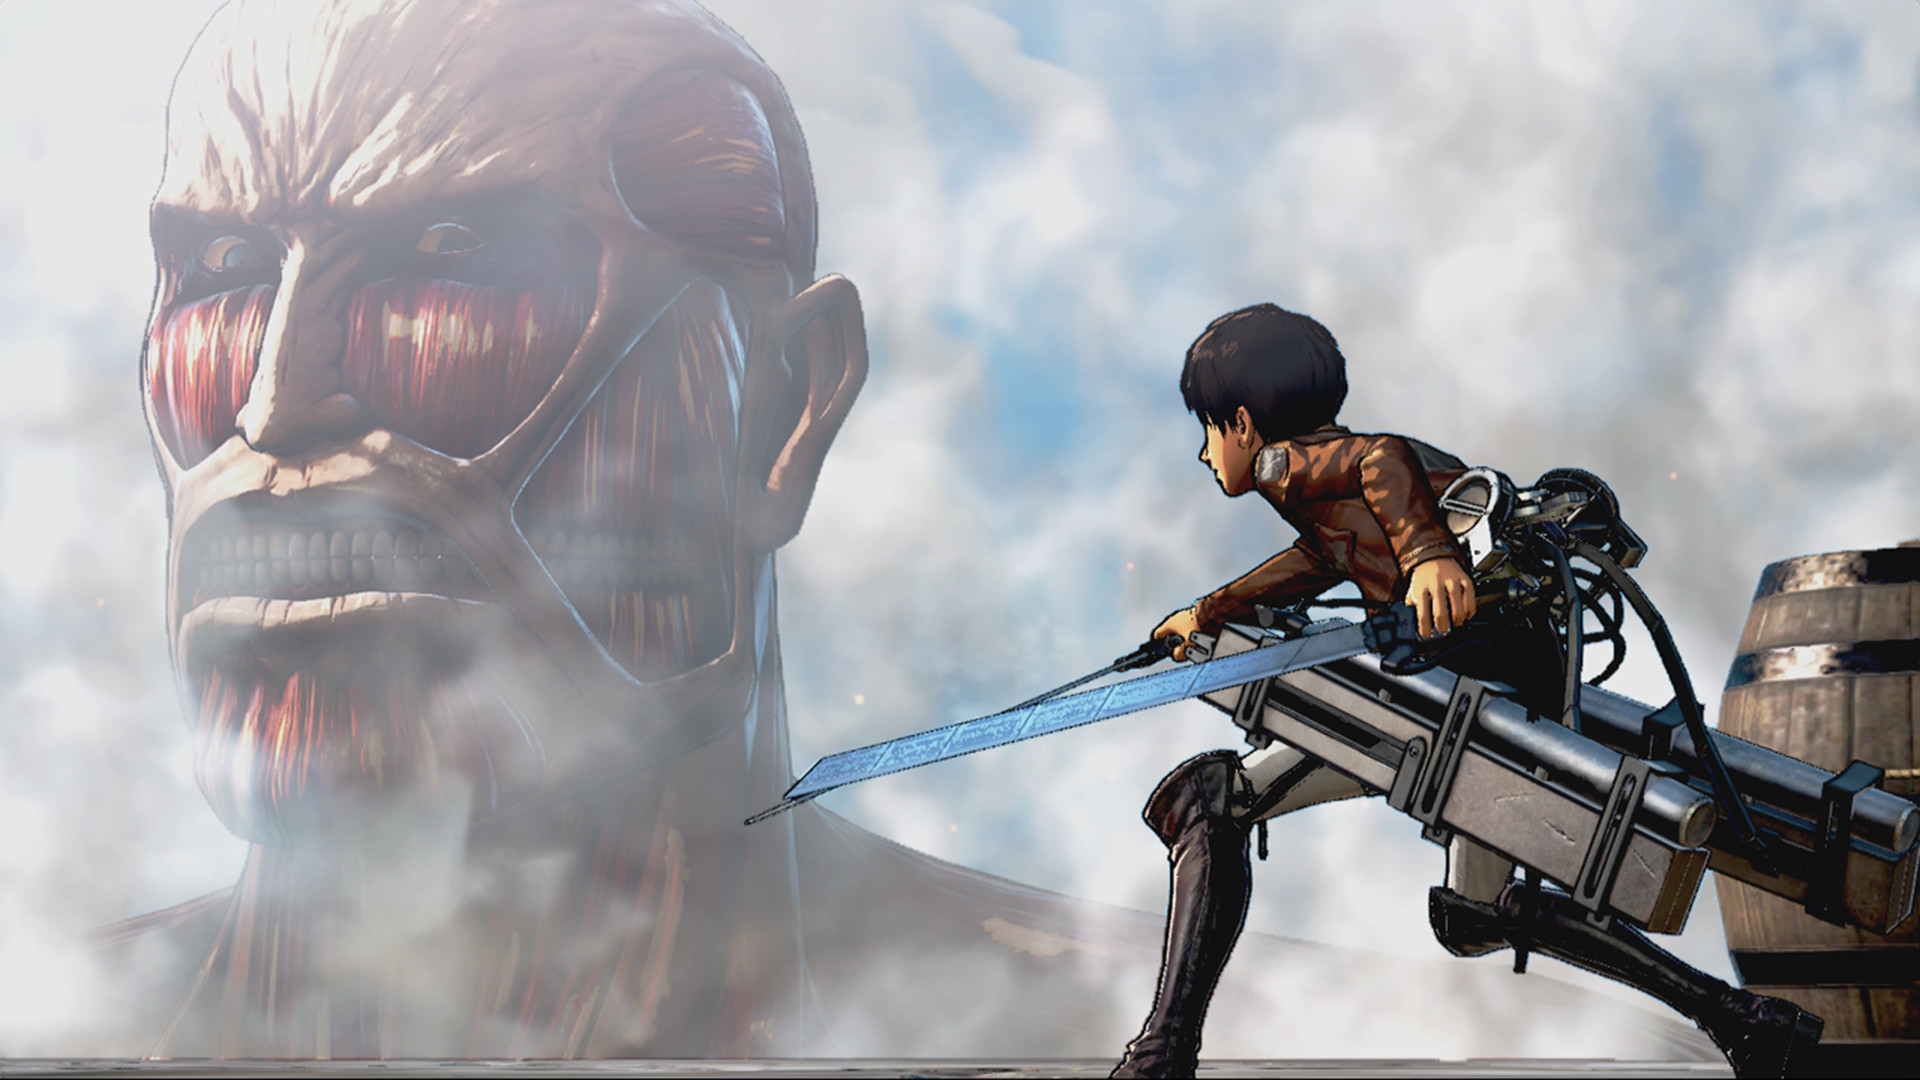 Los mejores juegos de anime: Attack on Titan. La imagen muestra un titán mirando a alguien y mira hambre